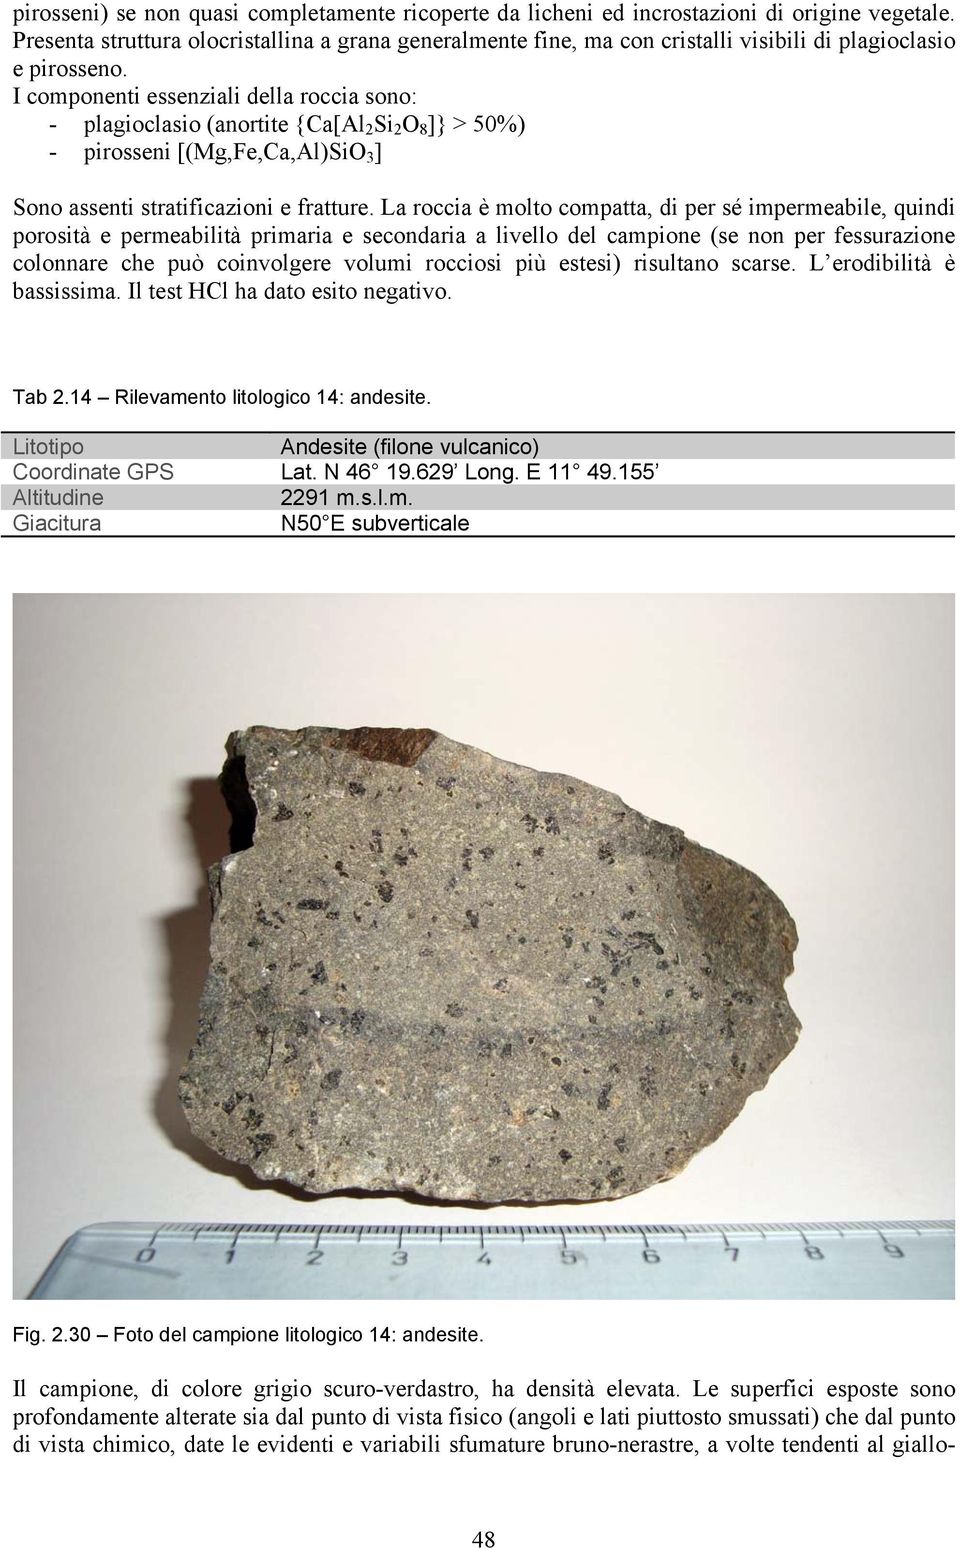 I componenti essenziali della roccia sono: - plagioclasio (anortite {Ca[Al 2 Si 2 O 8 ]} > 50%) - pirosseni [(Mg,Fe,Ca,Al)SiO 3 ] Sono assenti stratificazioni e fratture.